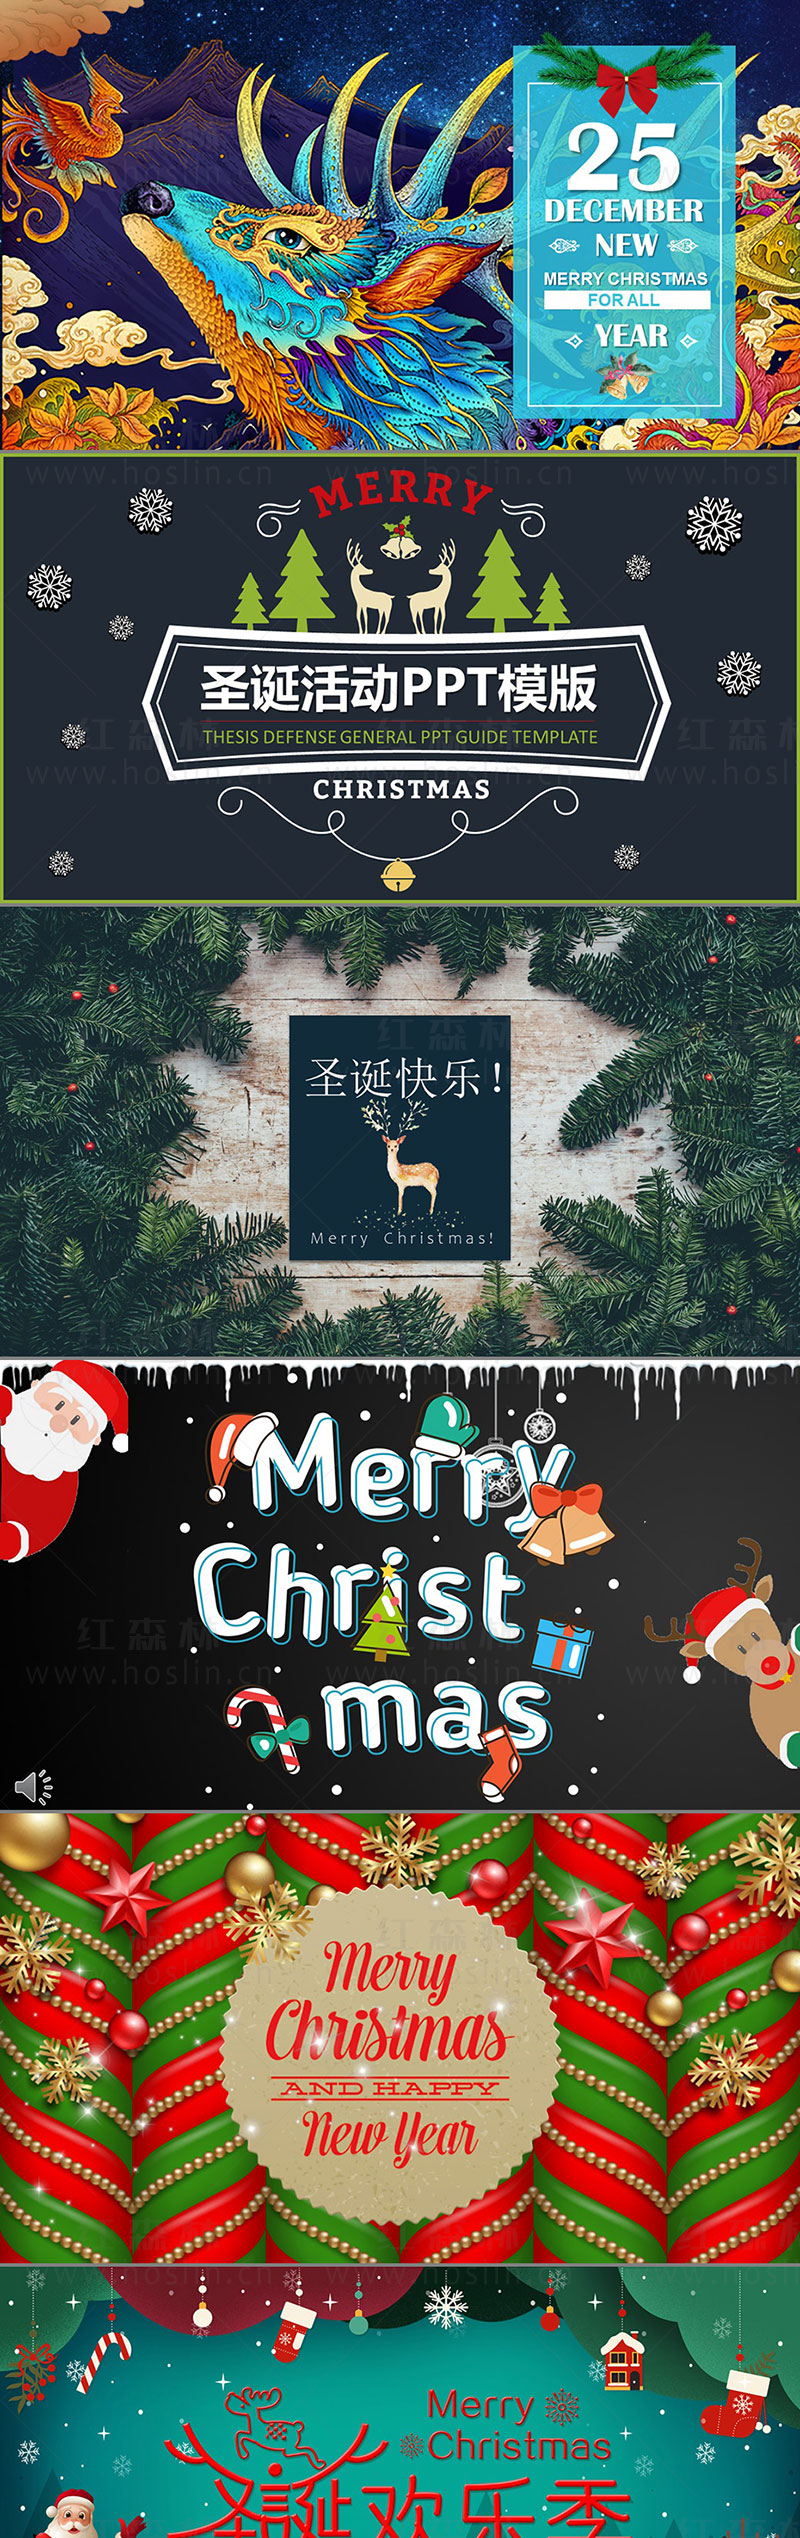 【PPT模板】时尚大气圣诞节日麋鹿圣诞老人欢乐活动策划年度总结PPT动态模板素材插图(2)